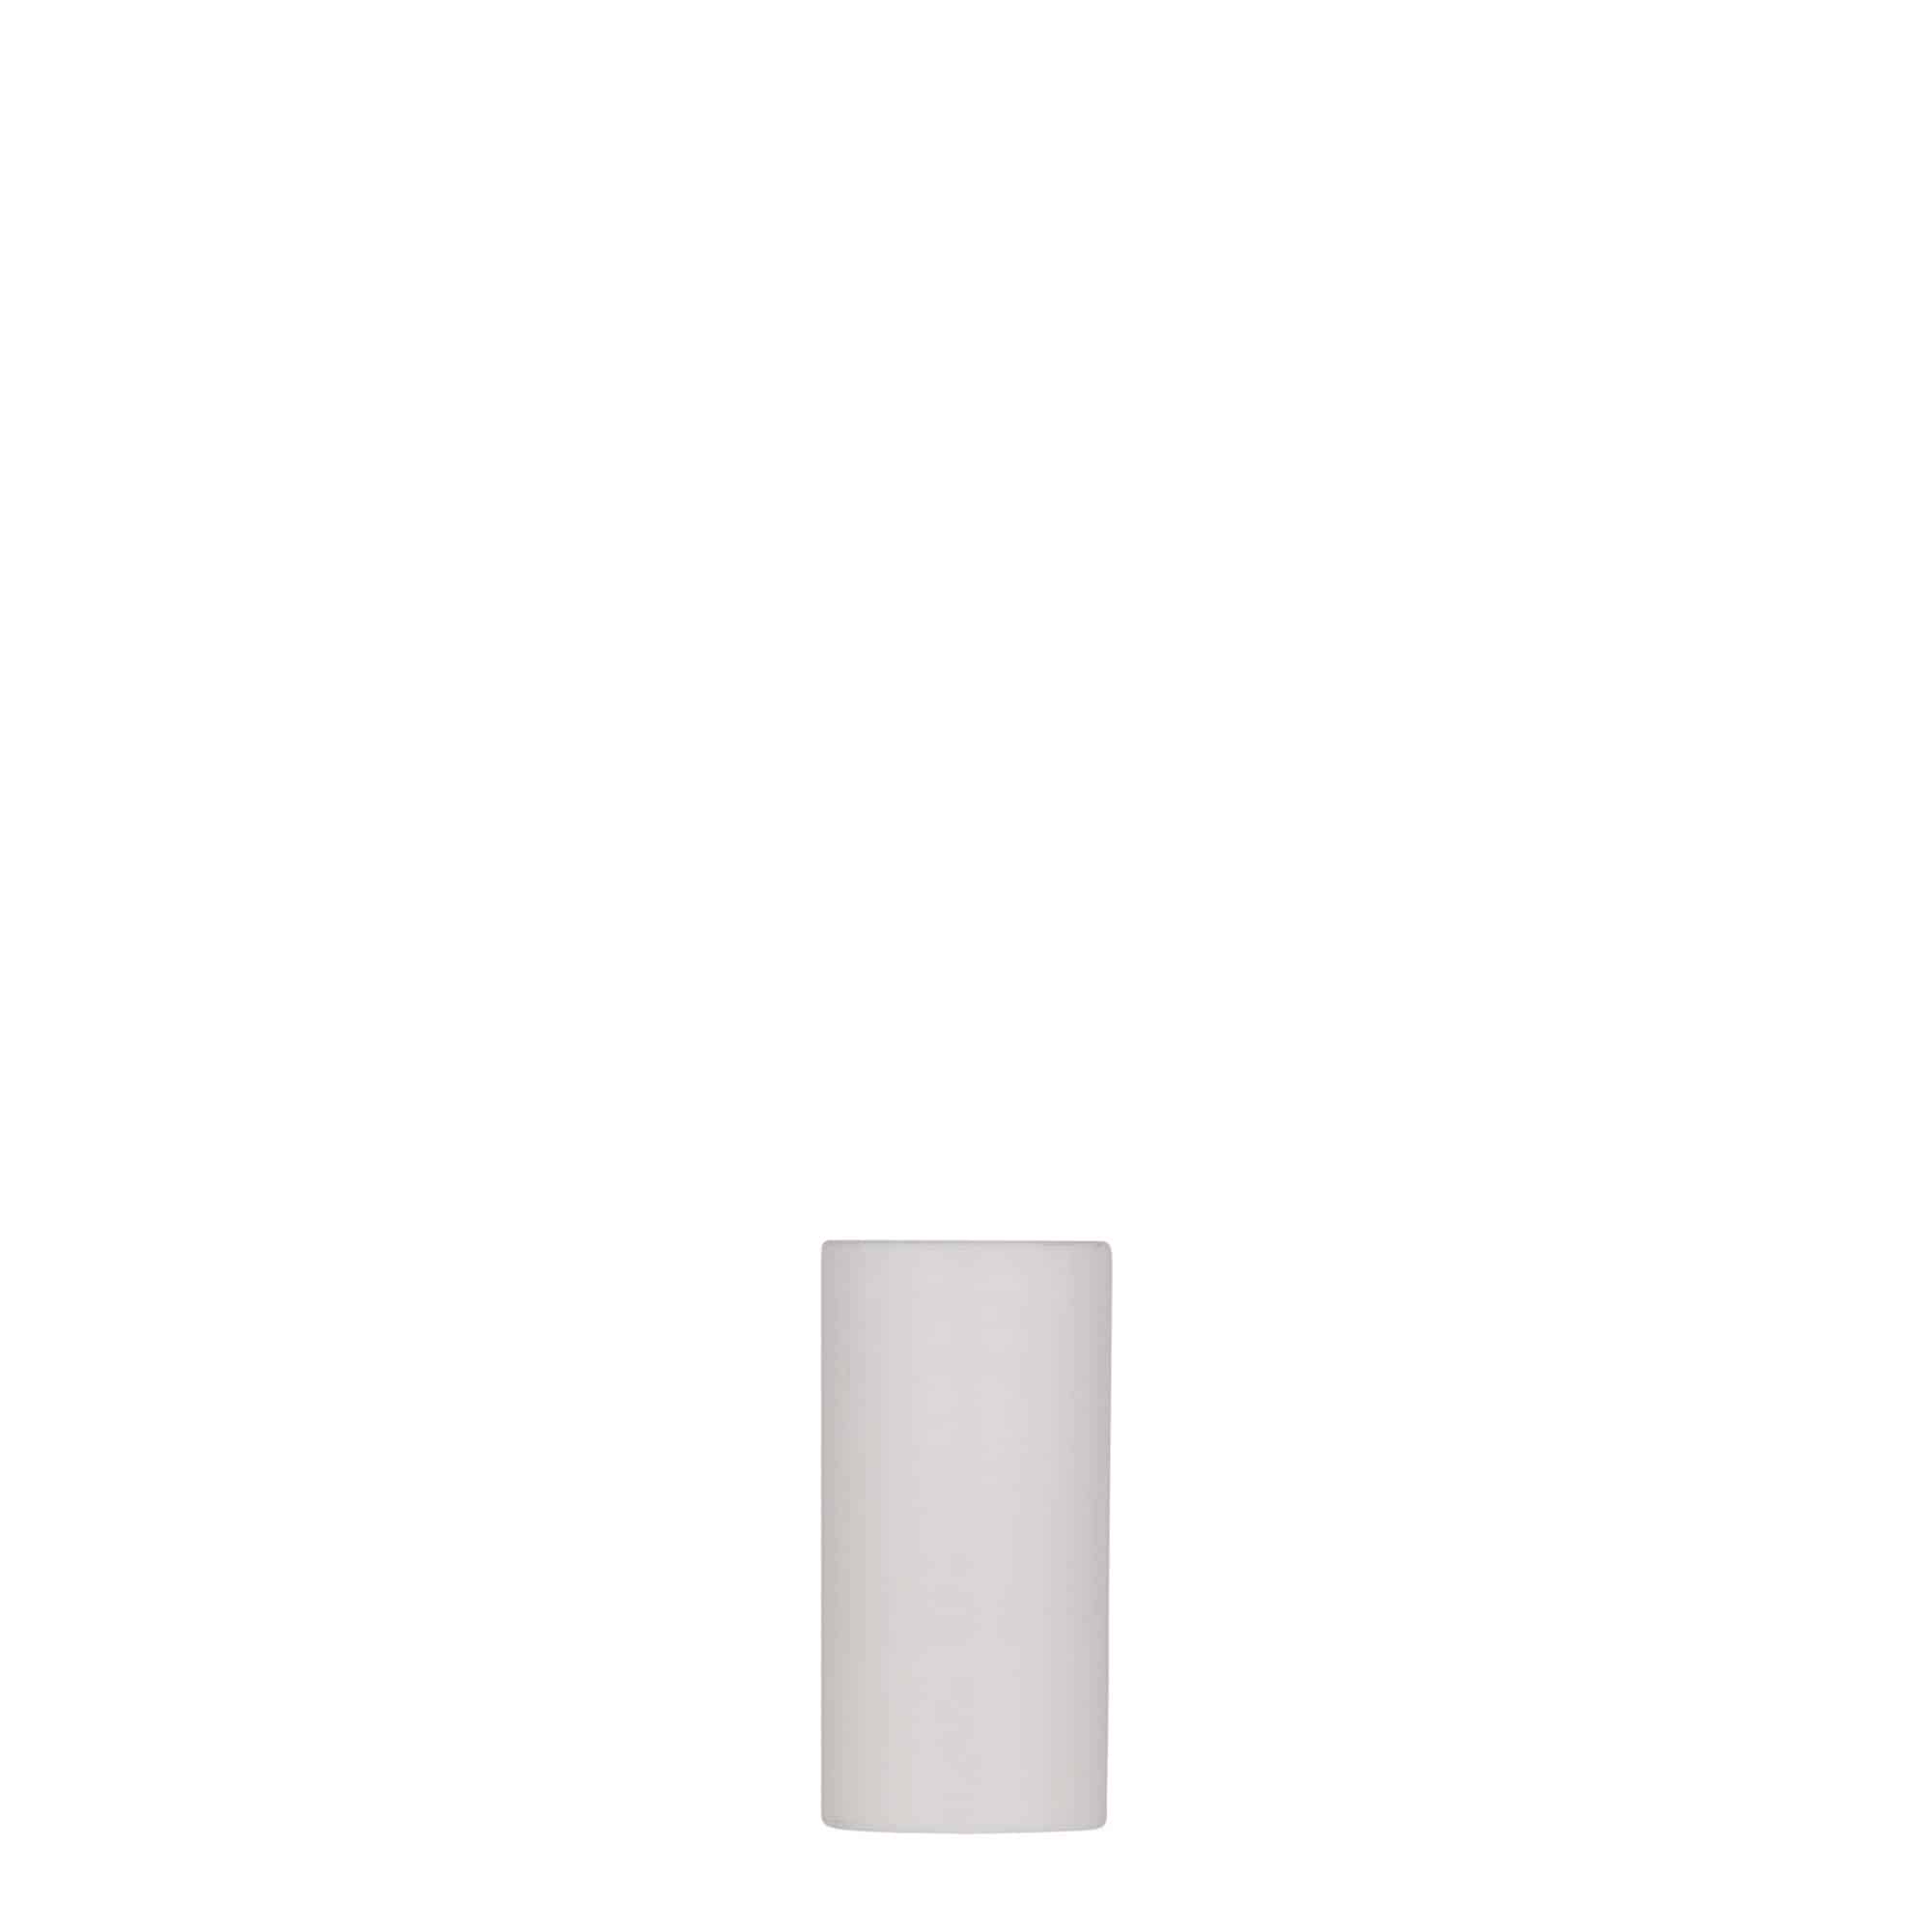 Bezvzduchový dávkovač 5 ml 'Nano', plast PP, bílý